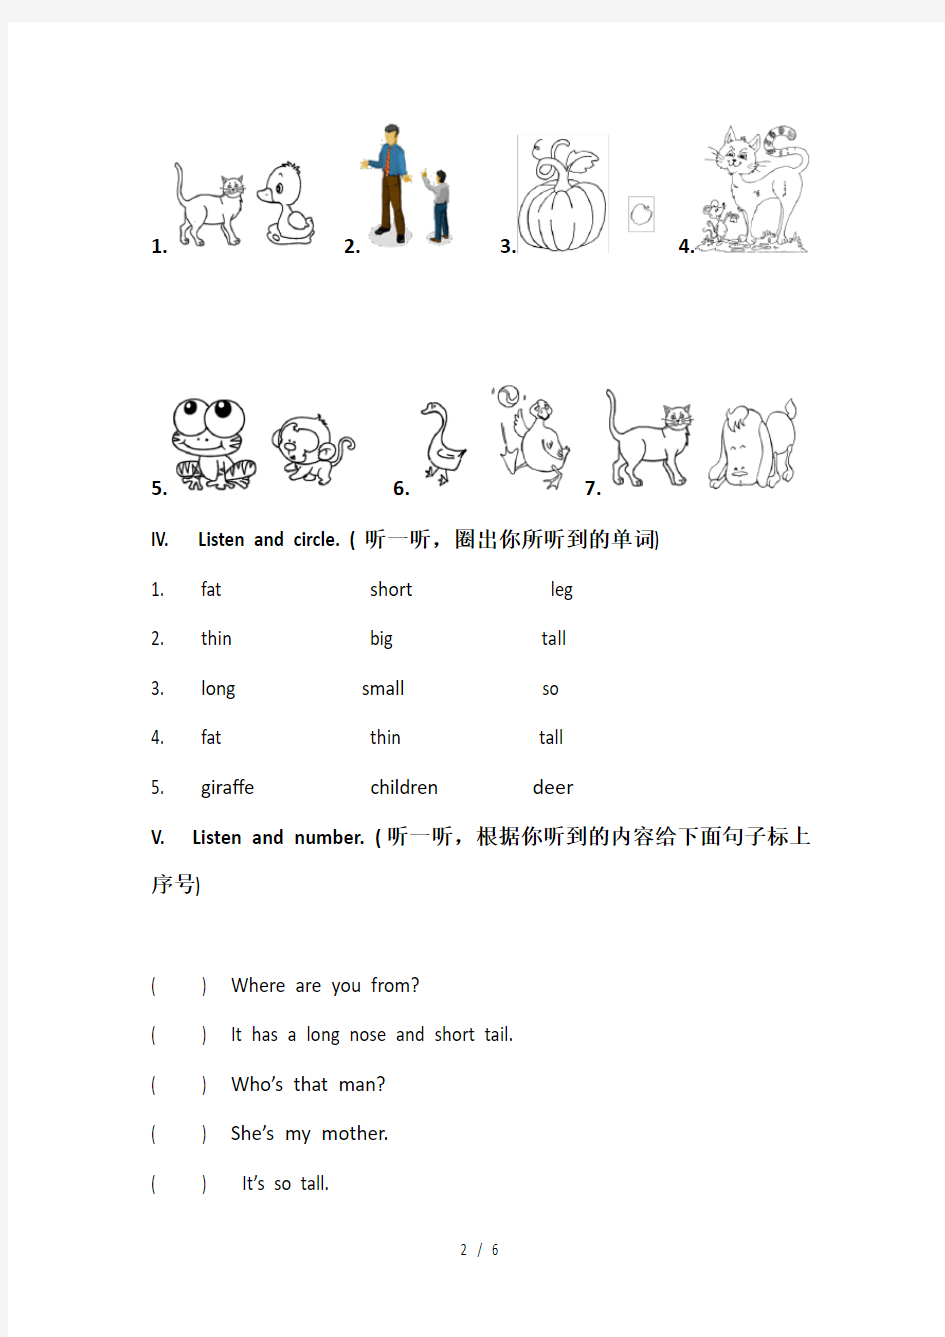 【人教pep版】三年级下册英语同步练习Unit3单元检测(含听力材料)